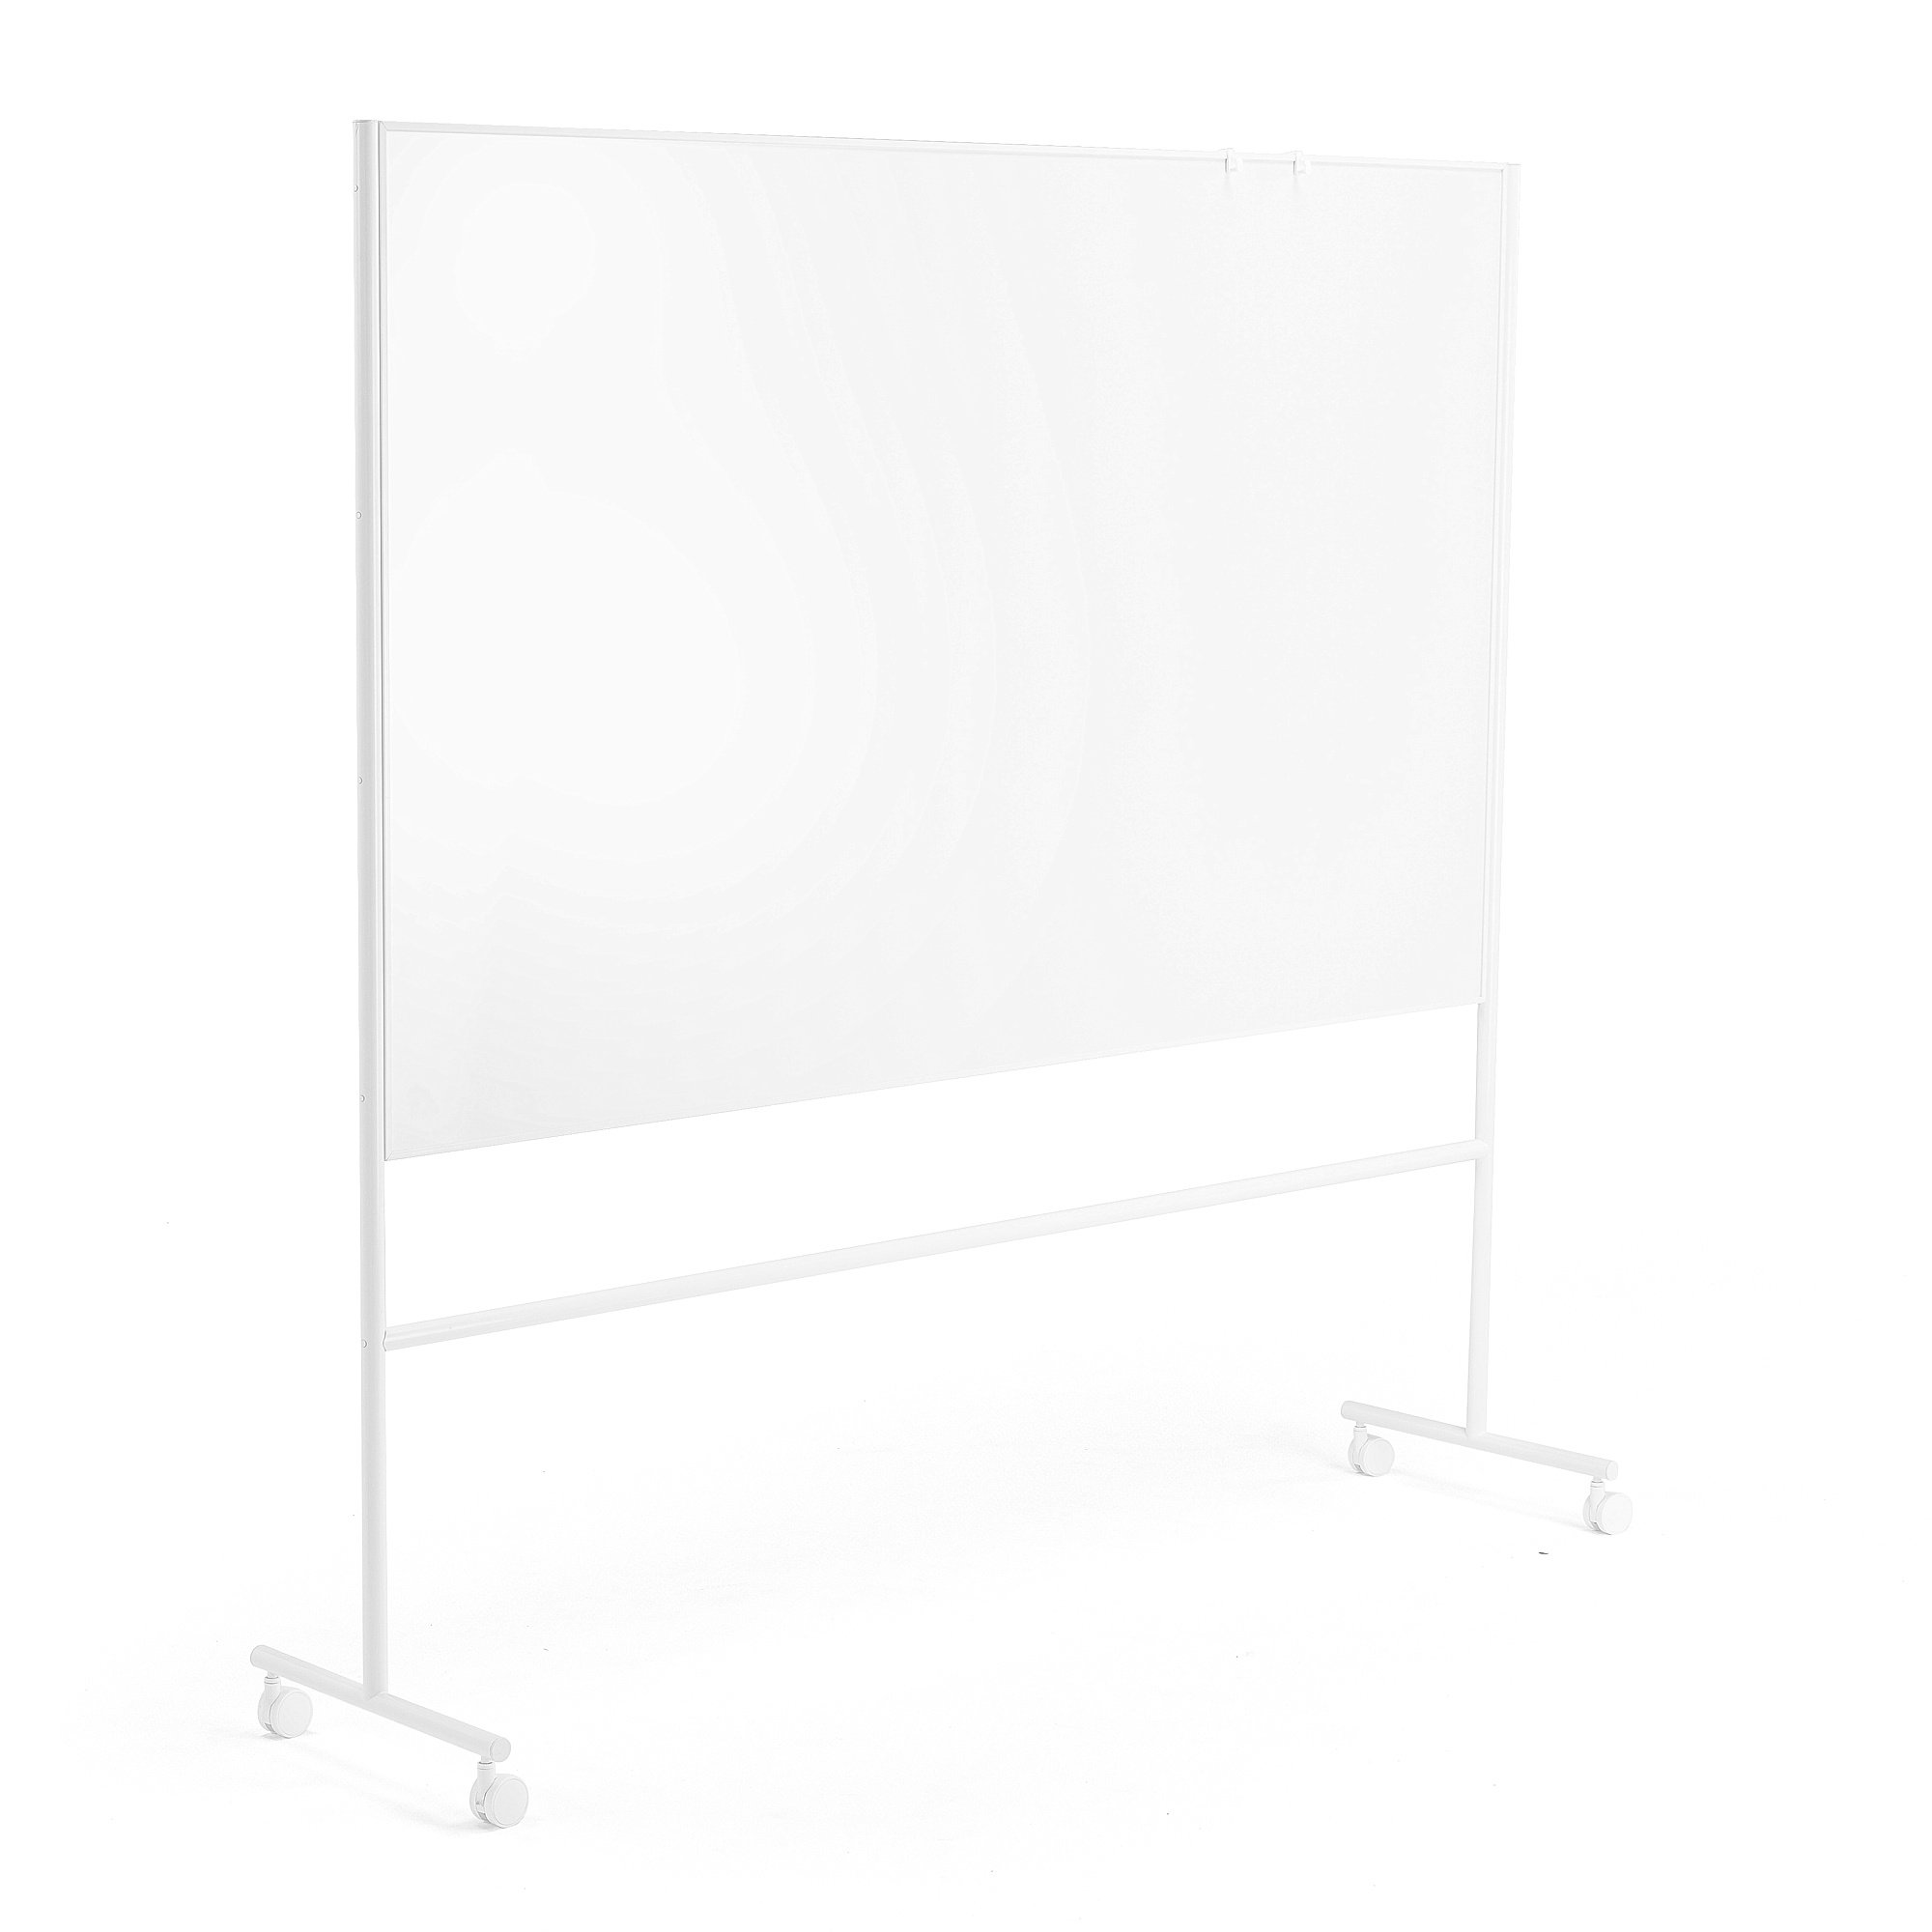 Mobilní bílá tabule EMMA, oboustranná, 2000x1200 mm, bílý rám